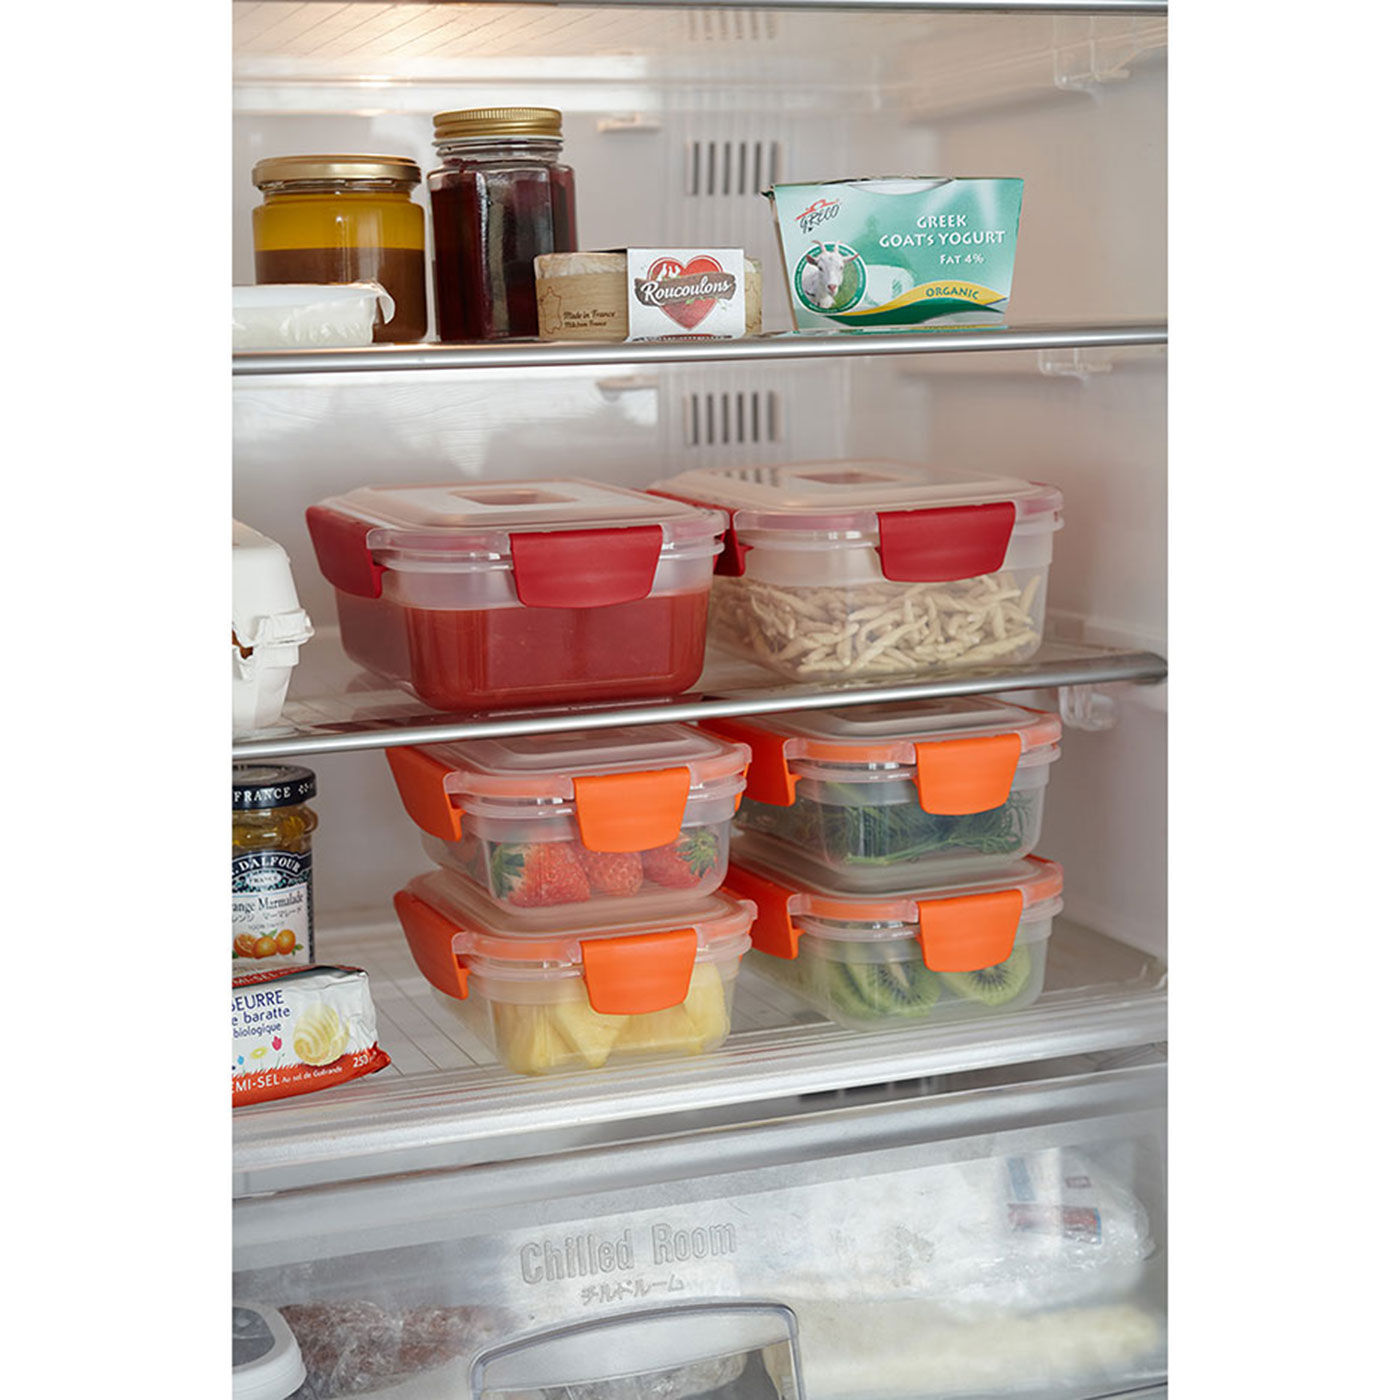 フェリシモの雑貨 クラソ|ジョセフジョセフ 重ねて収納できるのが便利な ネストロック５サイズセット|ふたをして容器を重ねると、底部とふたの上部がほどよい凹凸でずれ落ちにくく、冷蔵庫内での食品保存などに便利です。